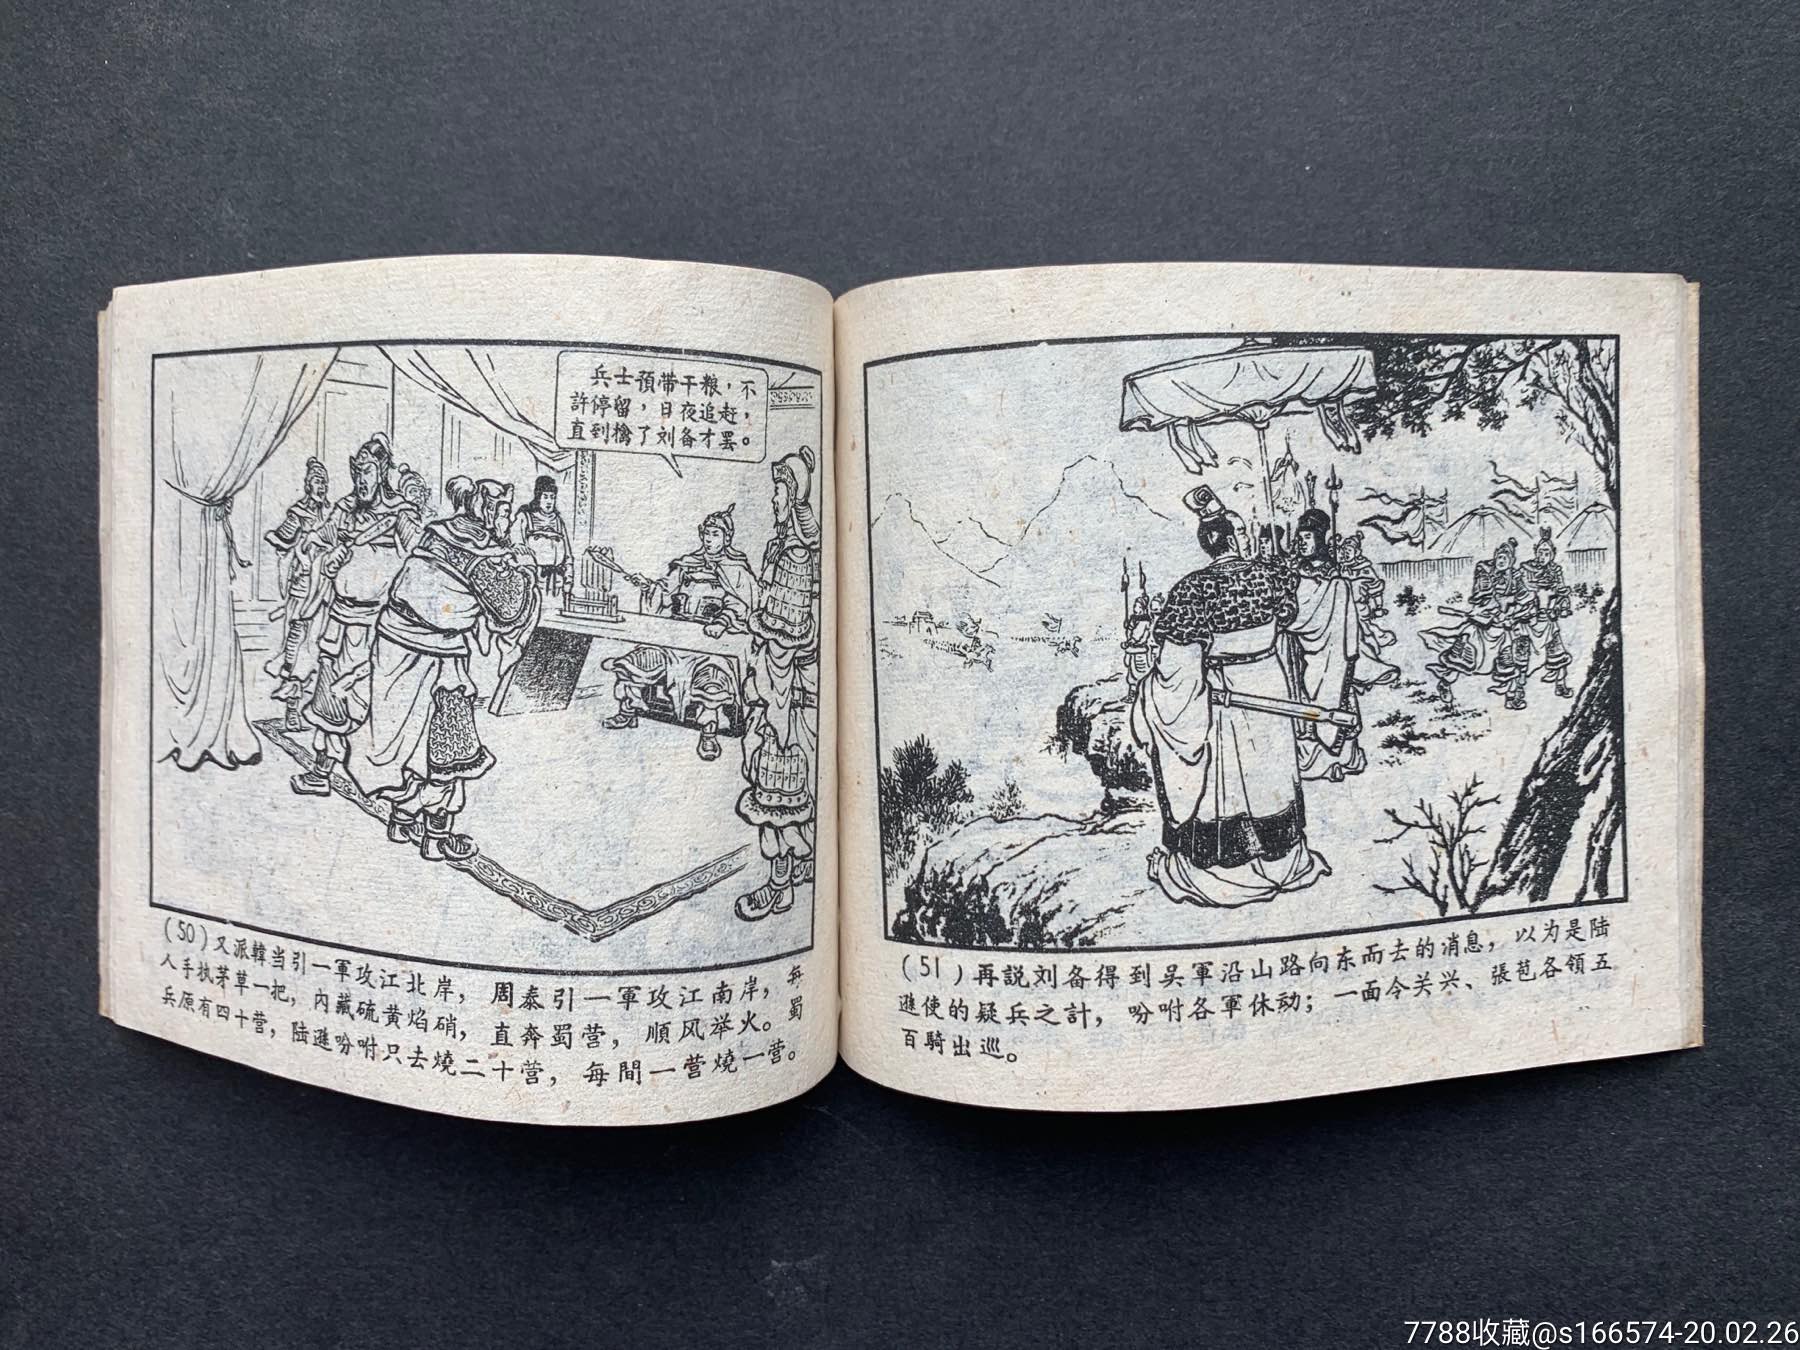 火烧连营(一版一印)大缺,连环画/小人书,六十年代(20世纪),绘画版